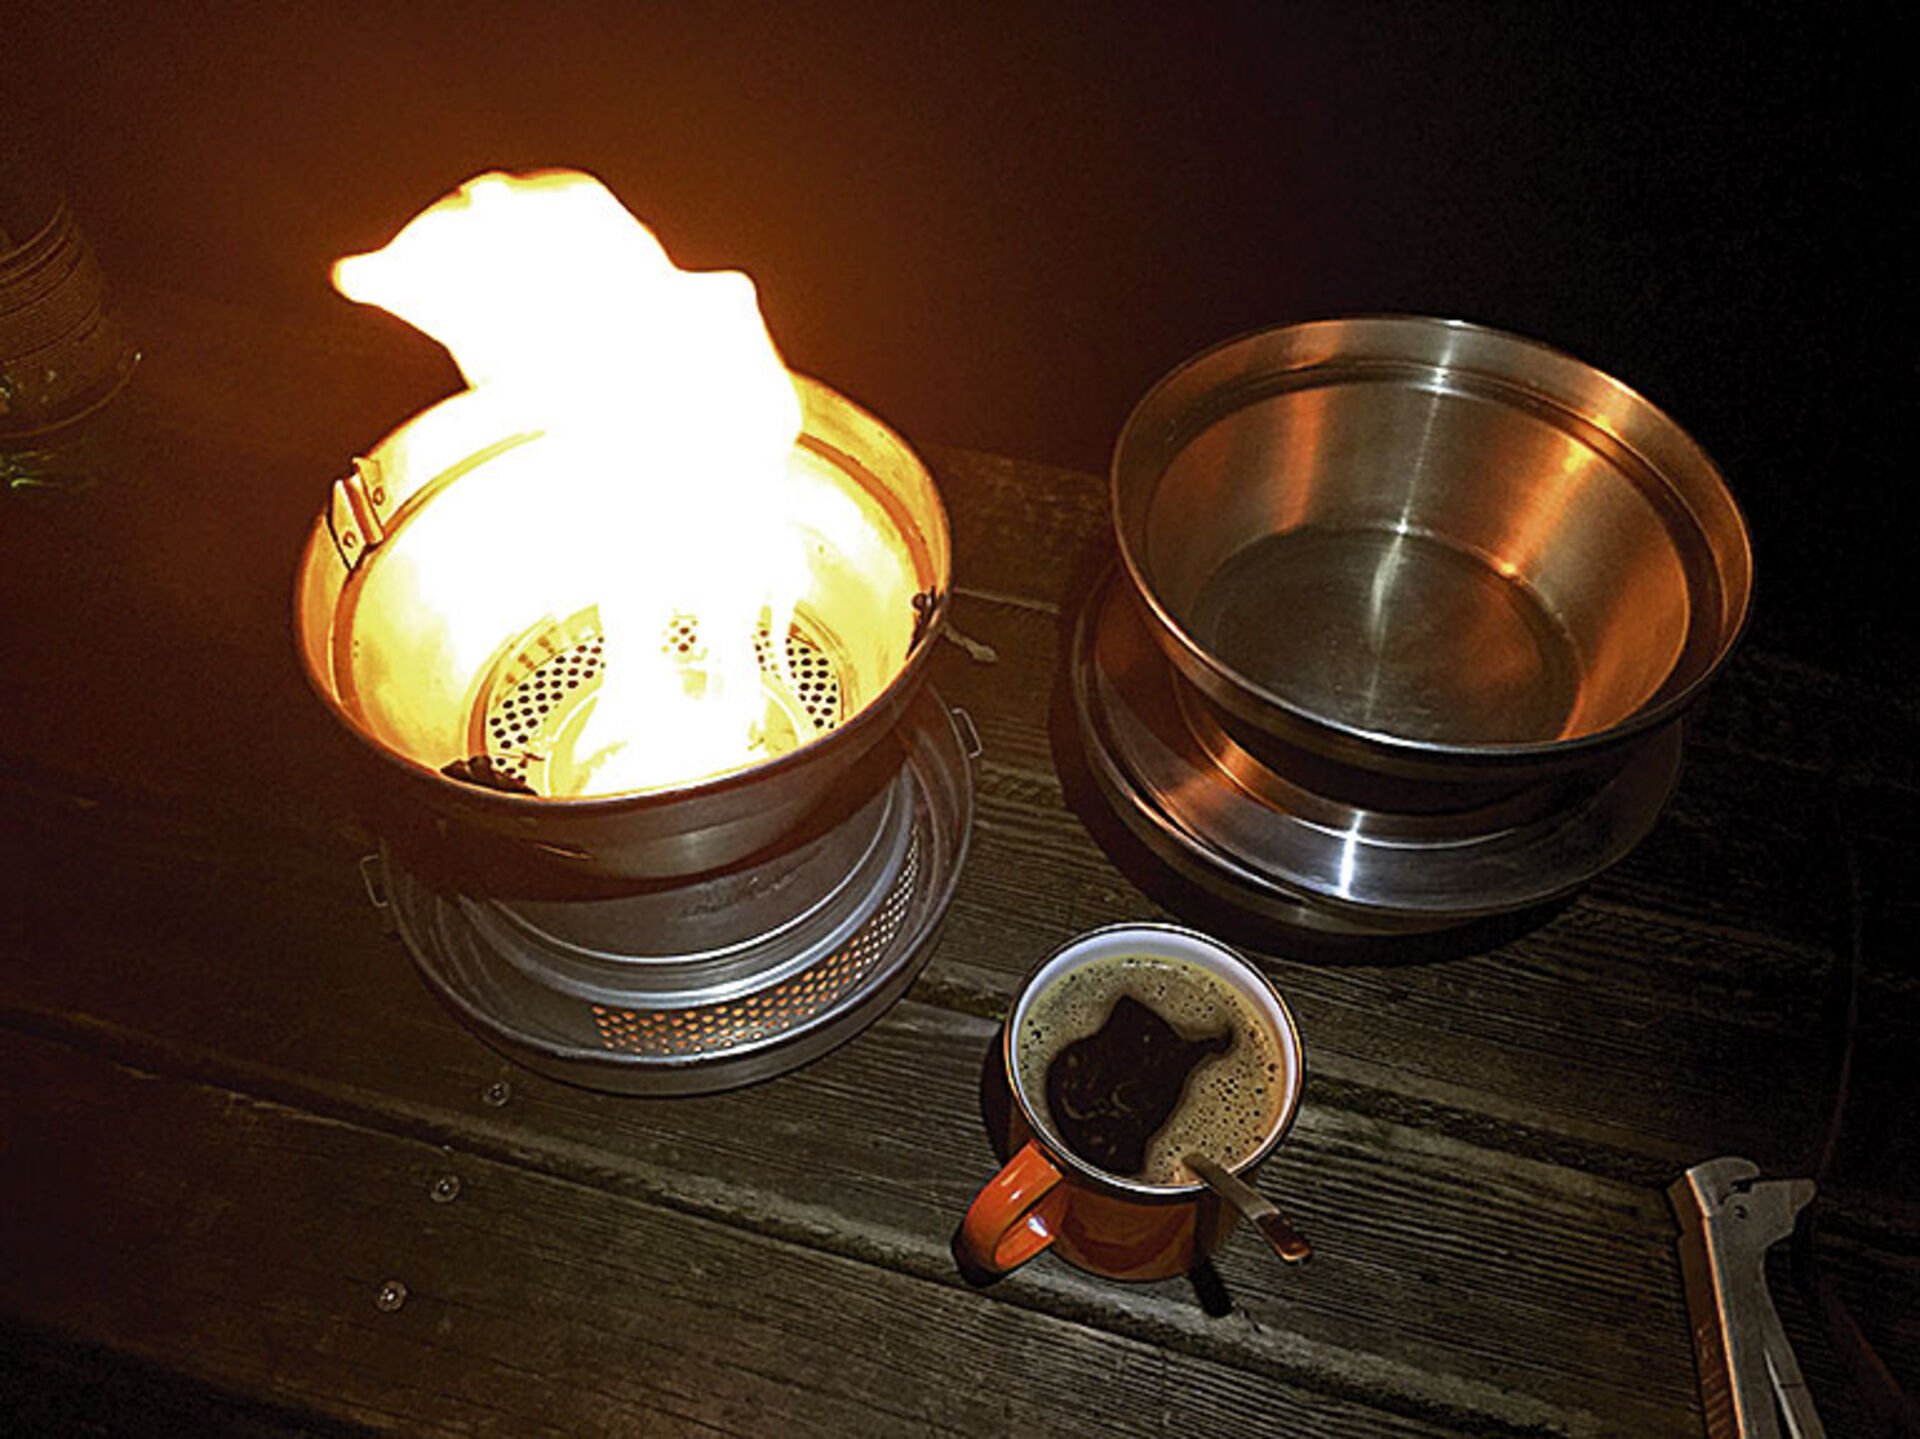  Auf einem alten Militärkocher wird das Wasser für den Kaffee erhitzt.  